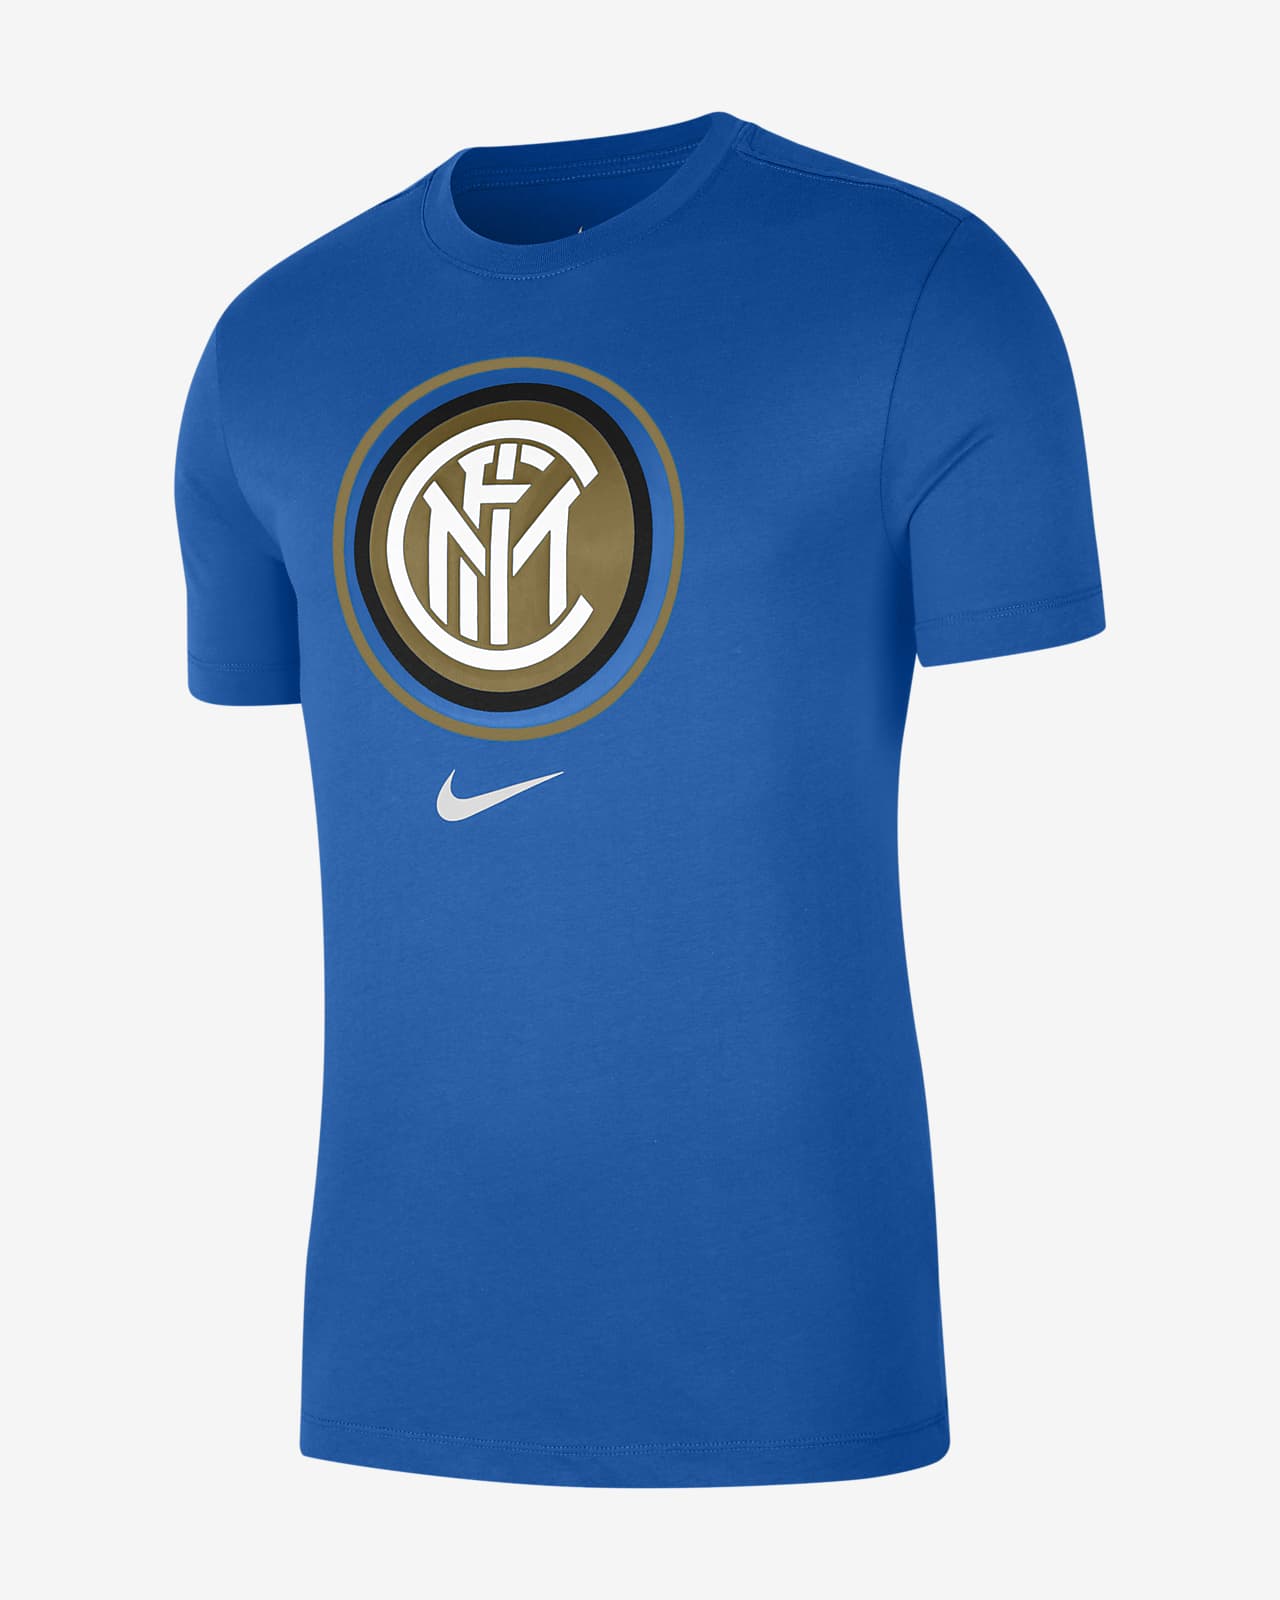 Inter Milan Men's T-Shirt. Nike LU